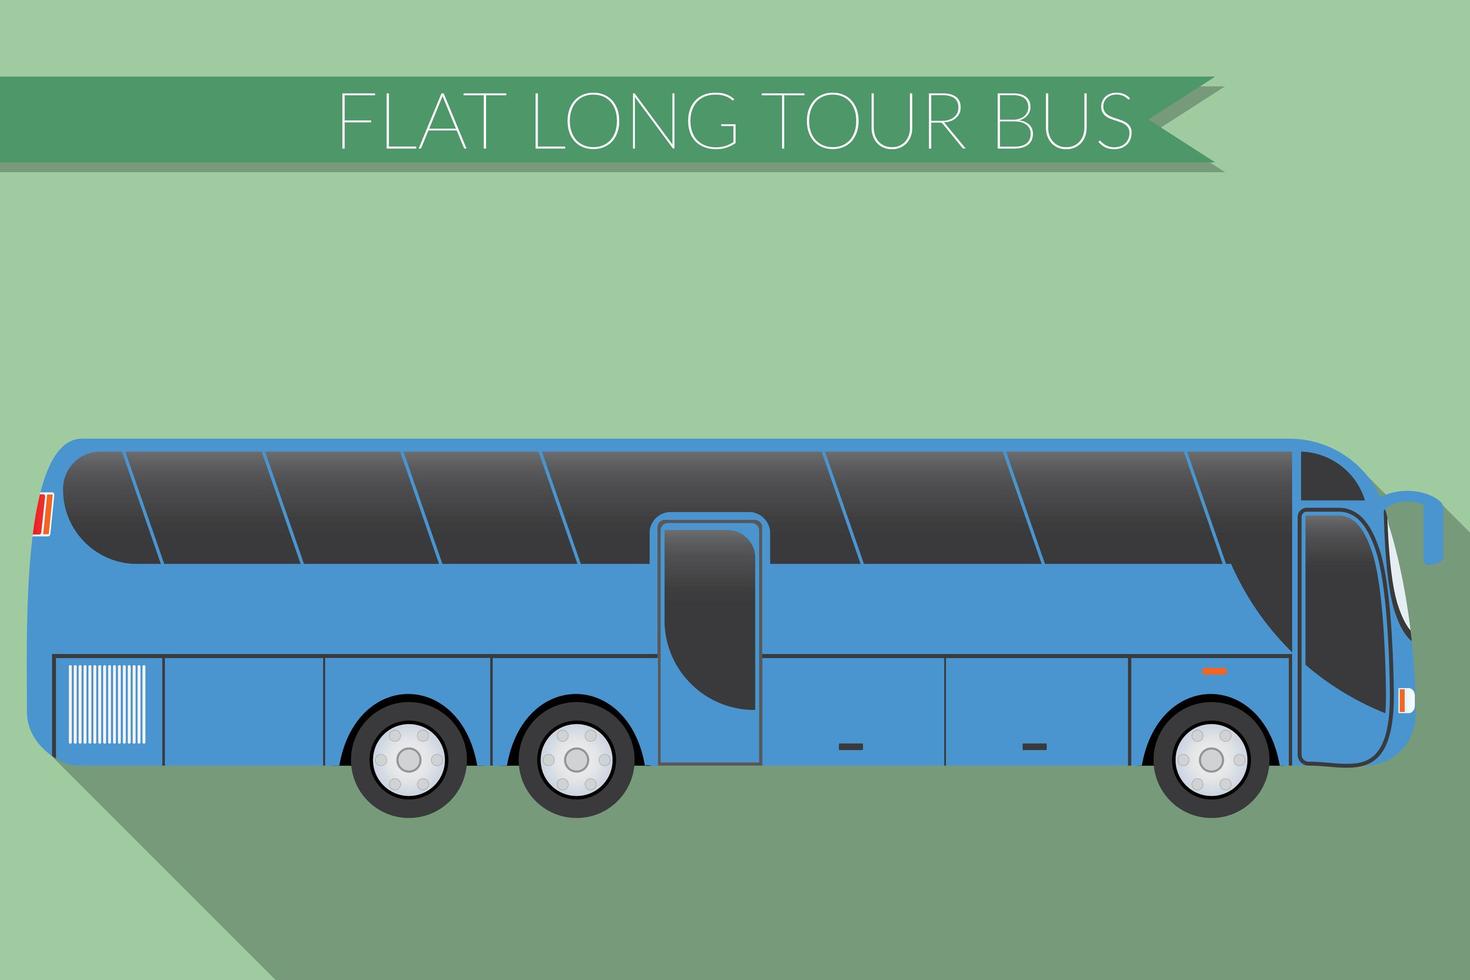 design plano ilustração vetorial transporte urbano, ônibus, intermunicipal, ônibus turístico de longa distância, vista lateral vetor